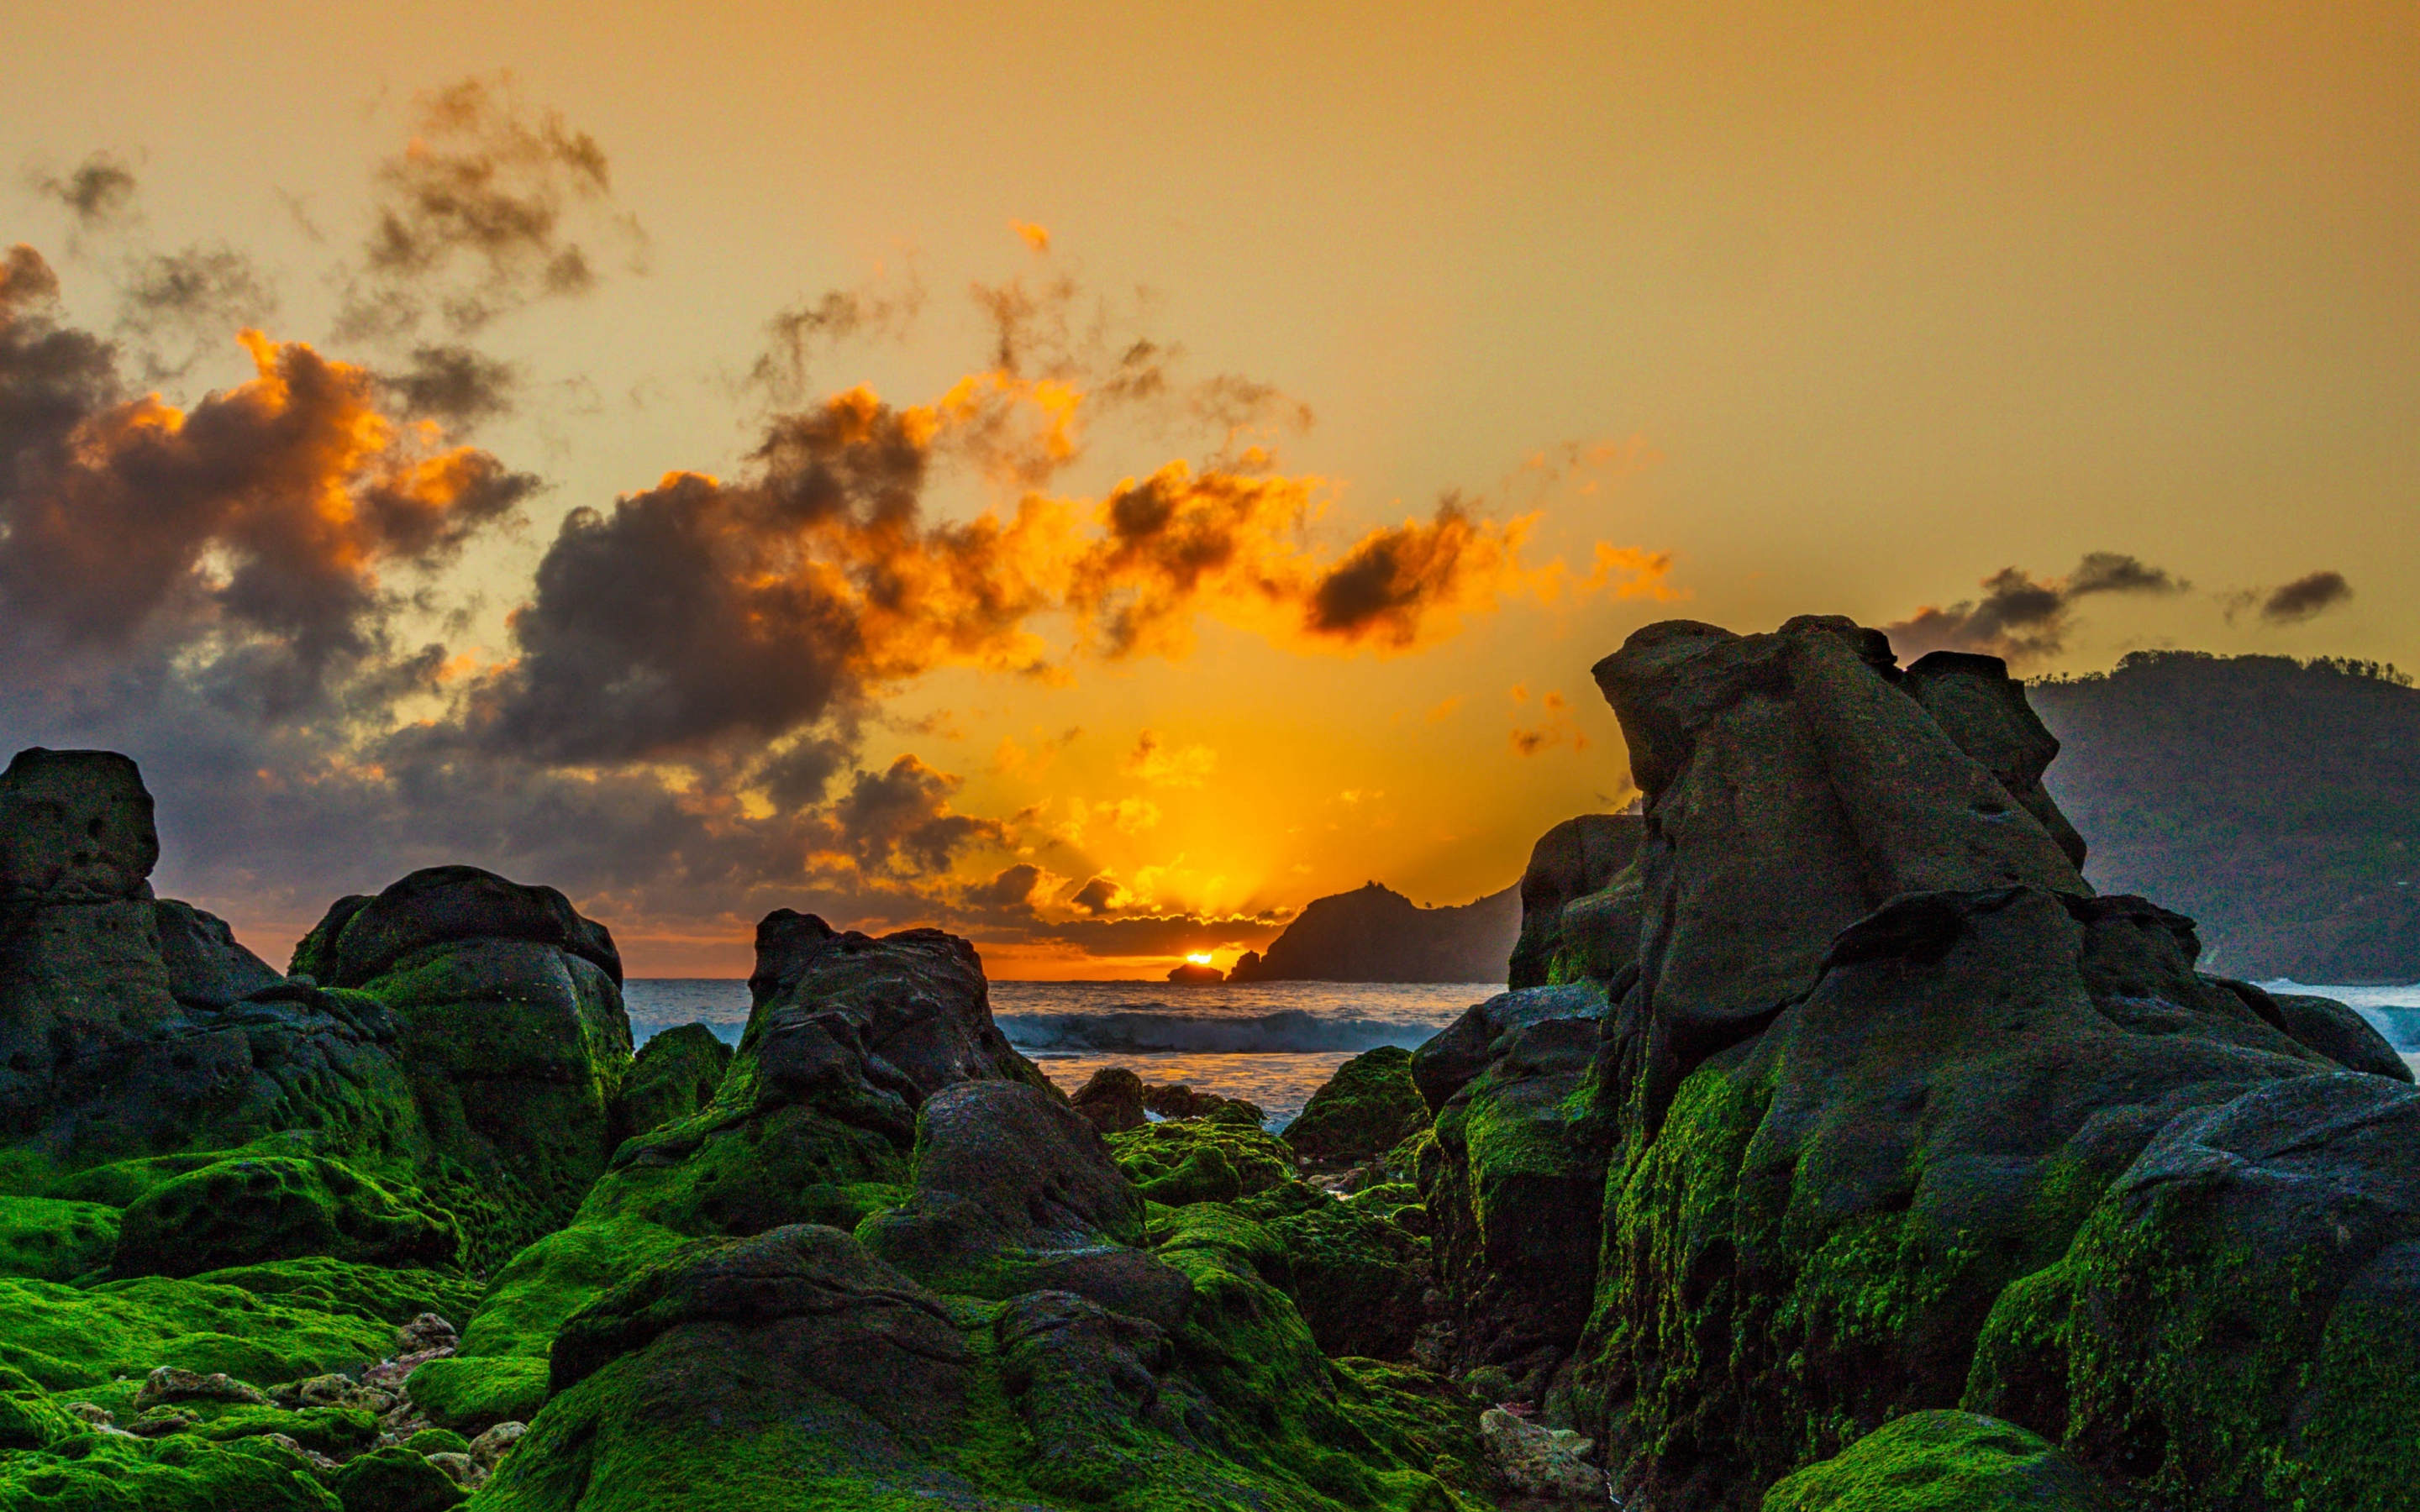 Sunset, coast, beautiful rocks, moss, 2880x1800 wallpaper